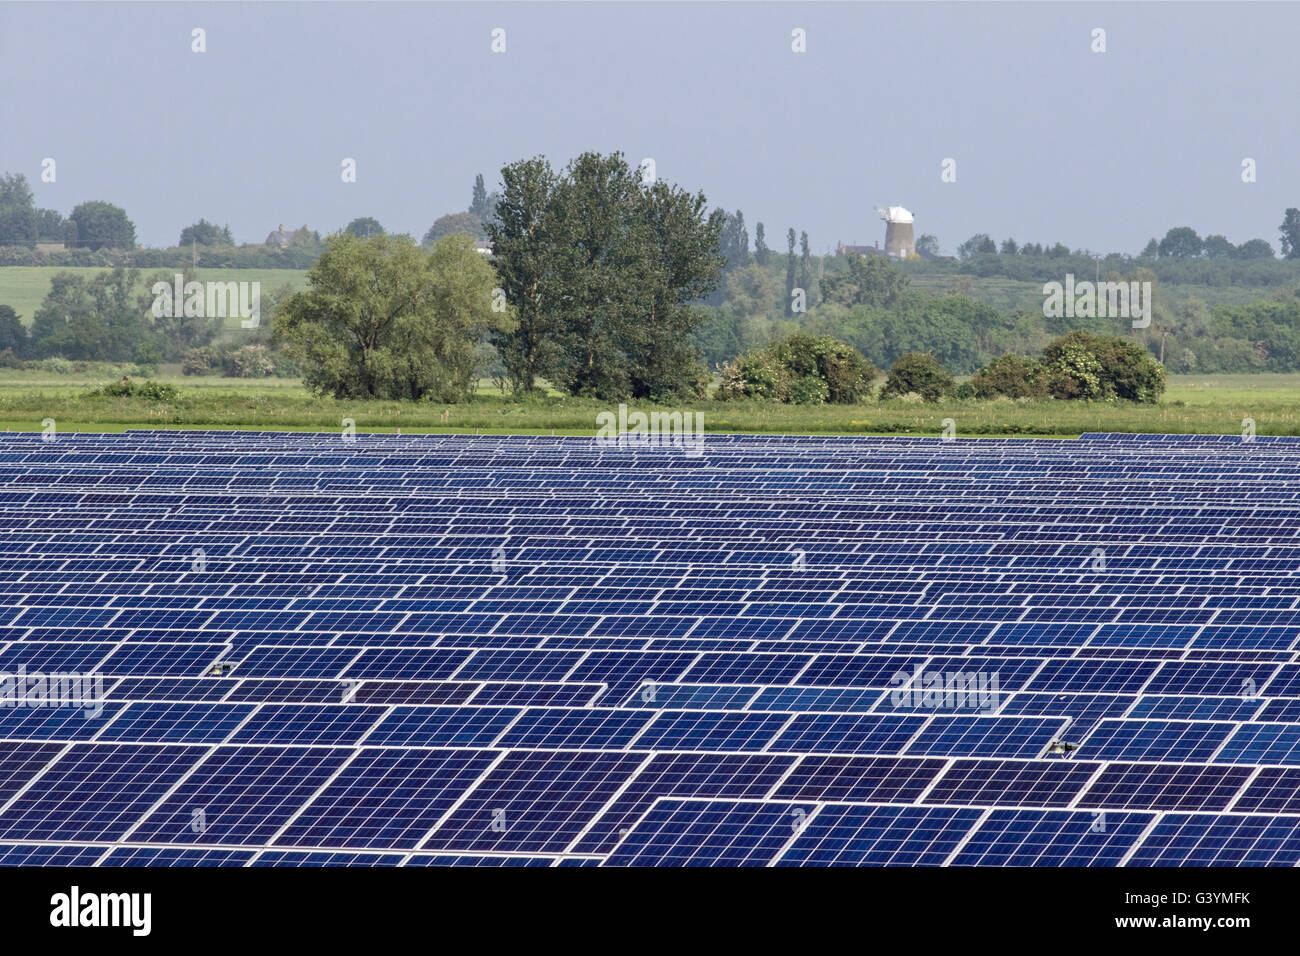 Vue de la ferme solaire à Wilburton, Cambridgeshire, Angleterre Banque D'Images